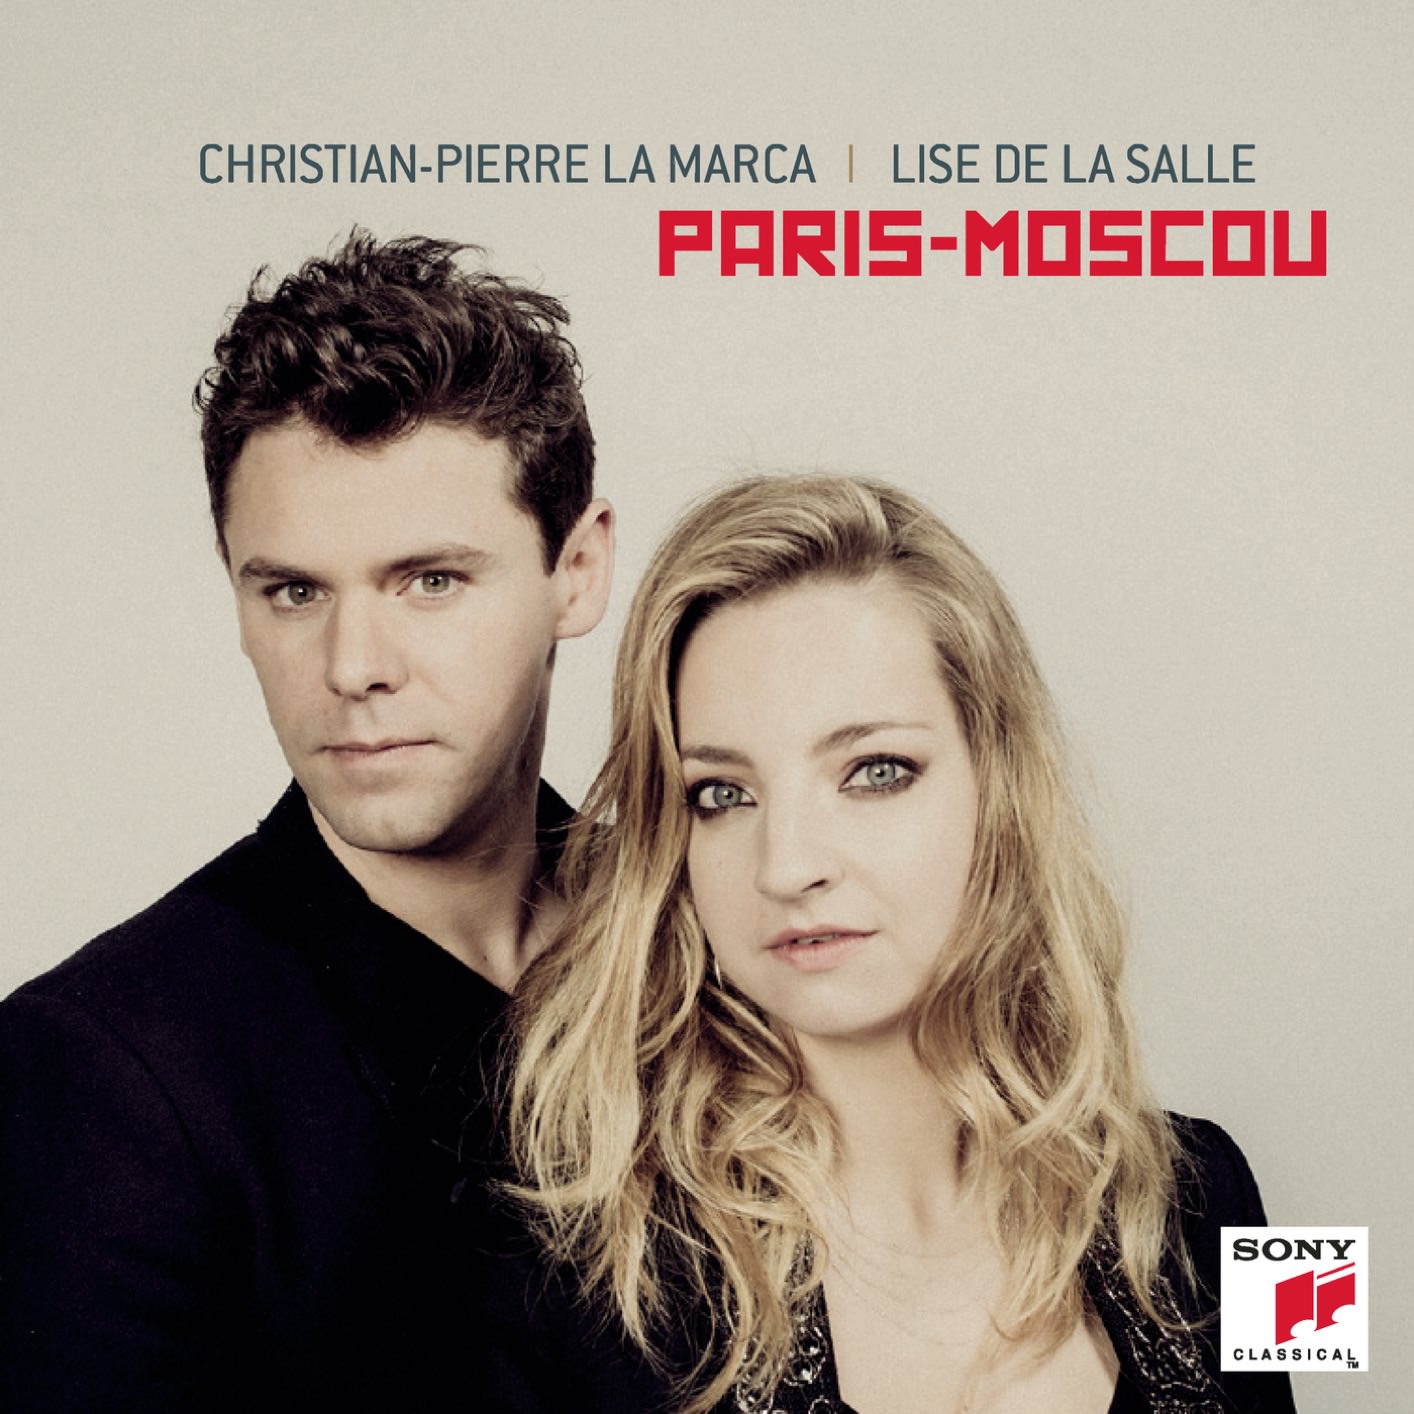 Christian-Pierre La Marca & Lise de la Salle - Paris-Moscou (2018) [FLAC 24bit/96kHz]